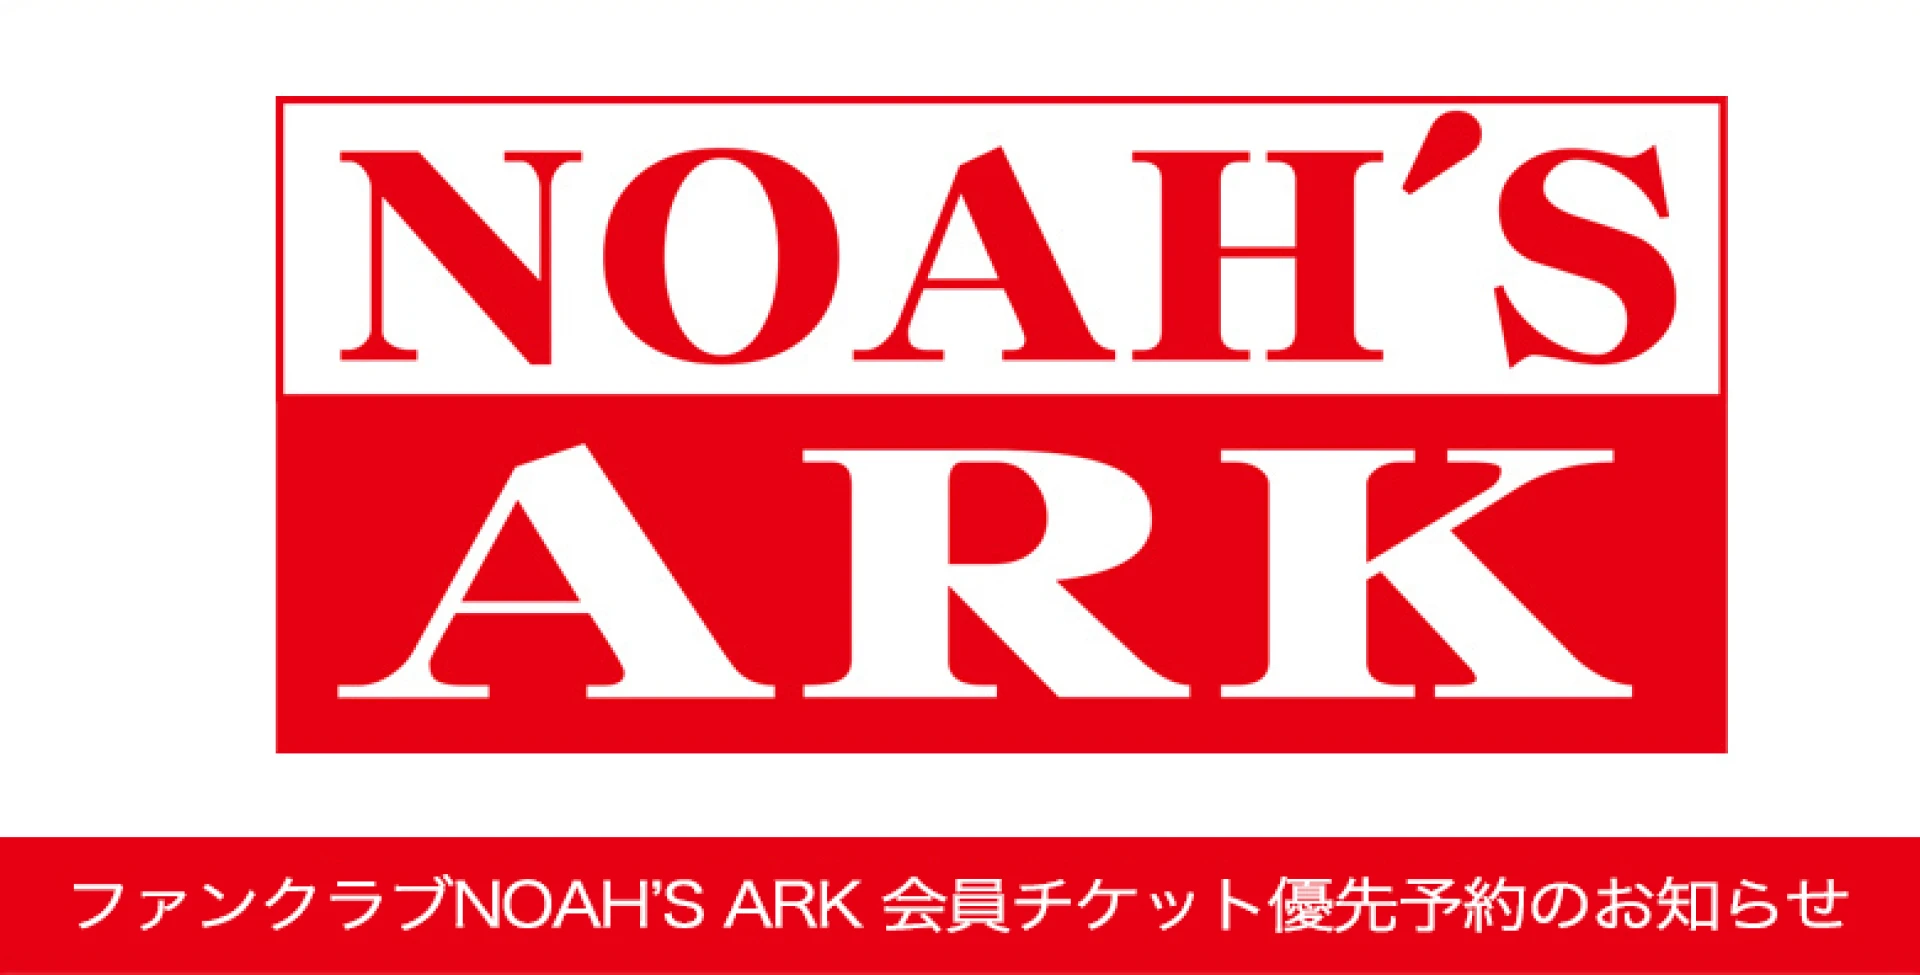 【本日17時30分より】ファンクラブNOAH'S ARK チケット優先予約受付のお知らせ